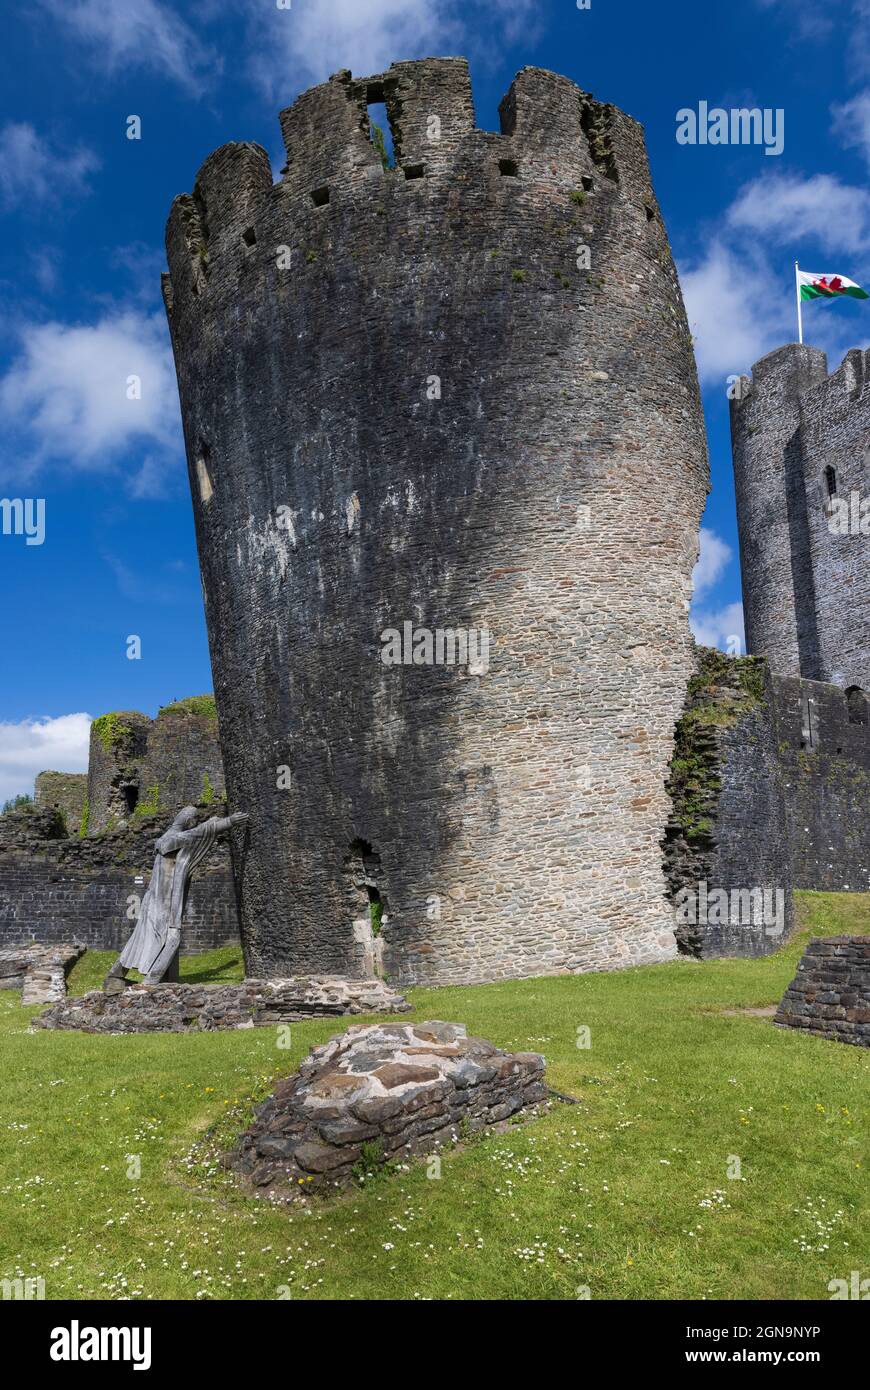 La Tour Sud-est penchée du château de Caerphilly, pays de Galles, Royaume-Uni Banque D'Images